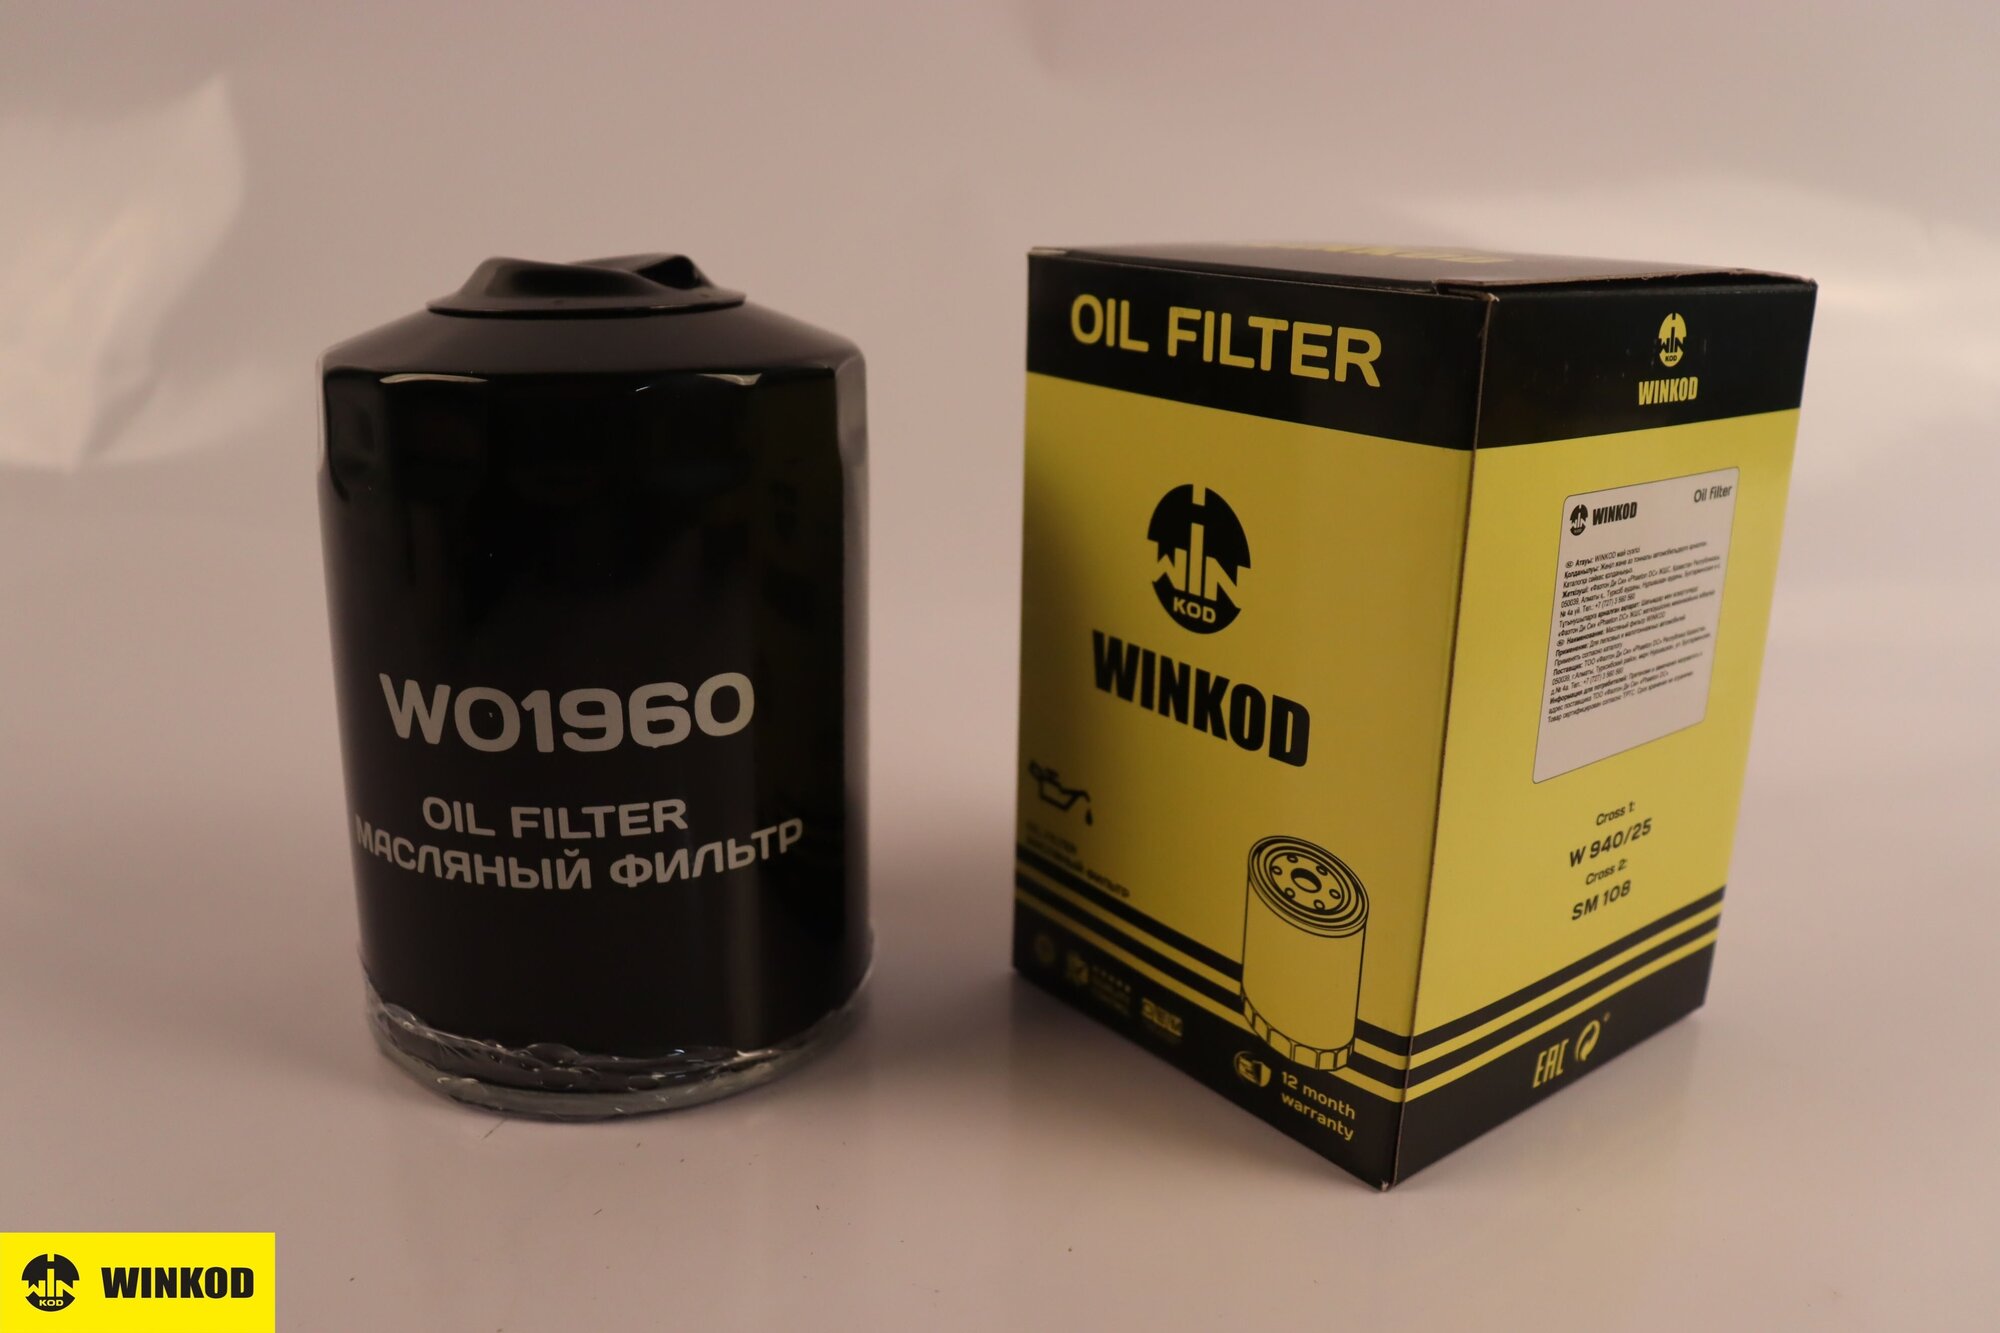 Фильтр масляный WO1960 аналог MANN FILTER W940/25 для Audi A4, Seat Ibiza, Cordobo 1.9, Inca 1.9D, VW Passat 1.9TDI, Caddy 1.9D